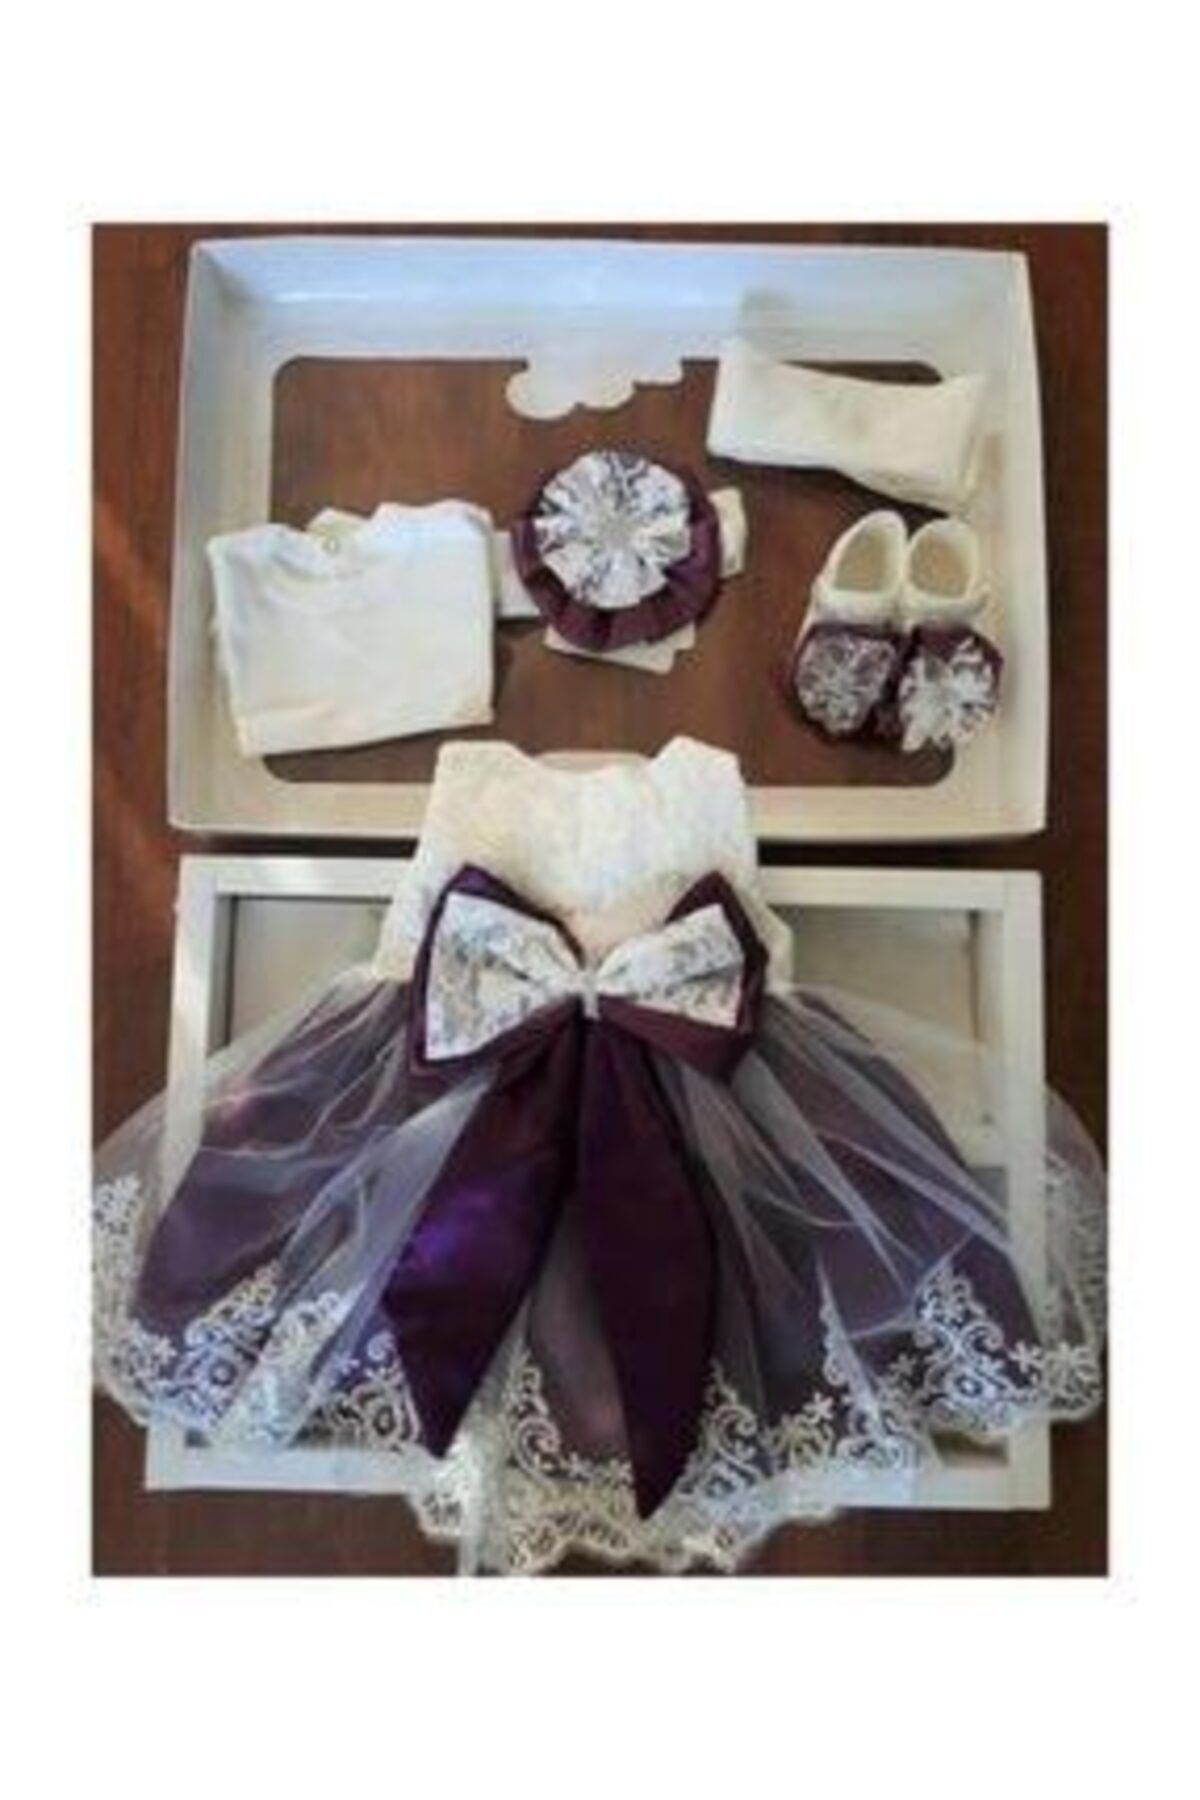 Ponpon Baby Kız Bebek Mevlüt Takımı Mevlütlük Abiye Elbise Lohusa Bebek Doğum Hediyesi Baby Shower Seti